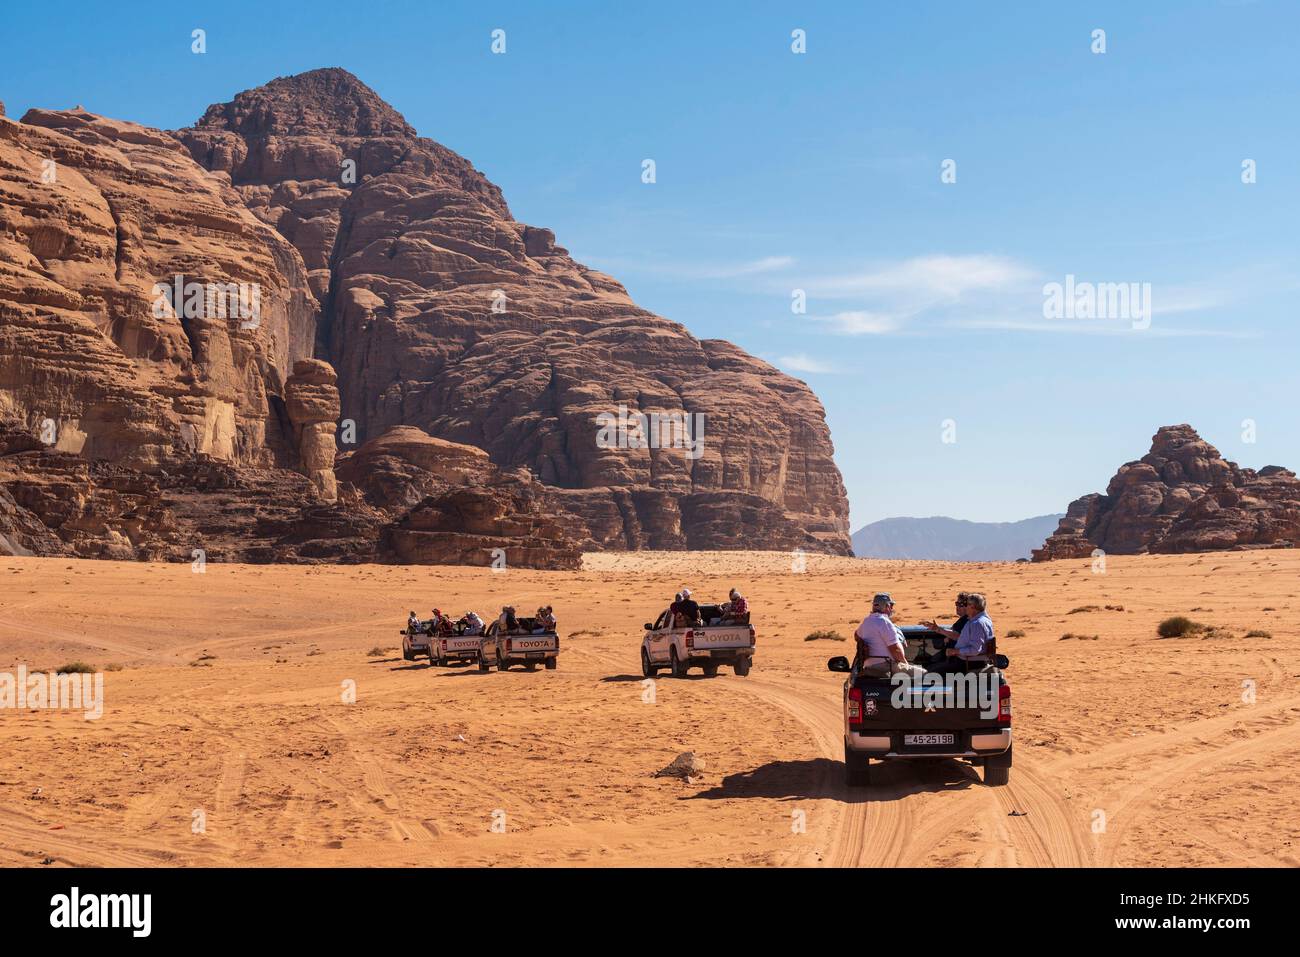 Jordanien, Aqaba Governorate, Wadi Rum, von der UNESCO zum Weltkulturerbe erklärt, Wüste, Touristen in Allradfahrzeugen Stockfoto